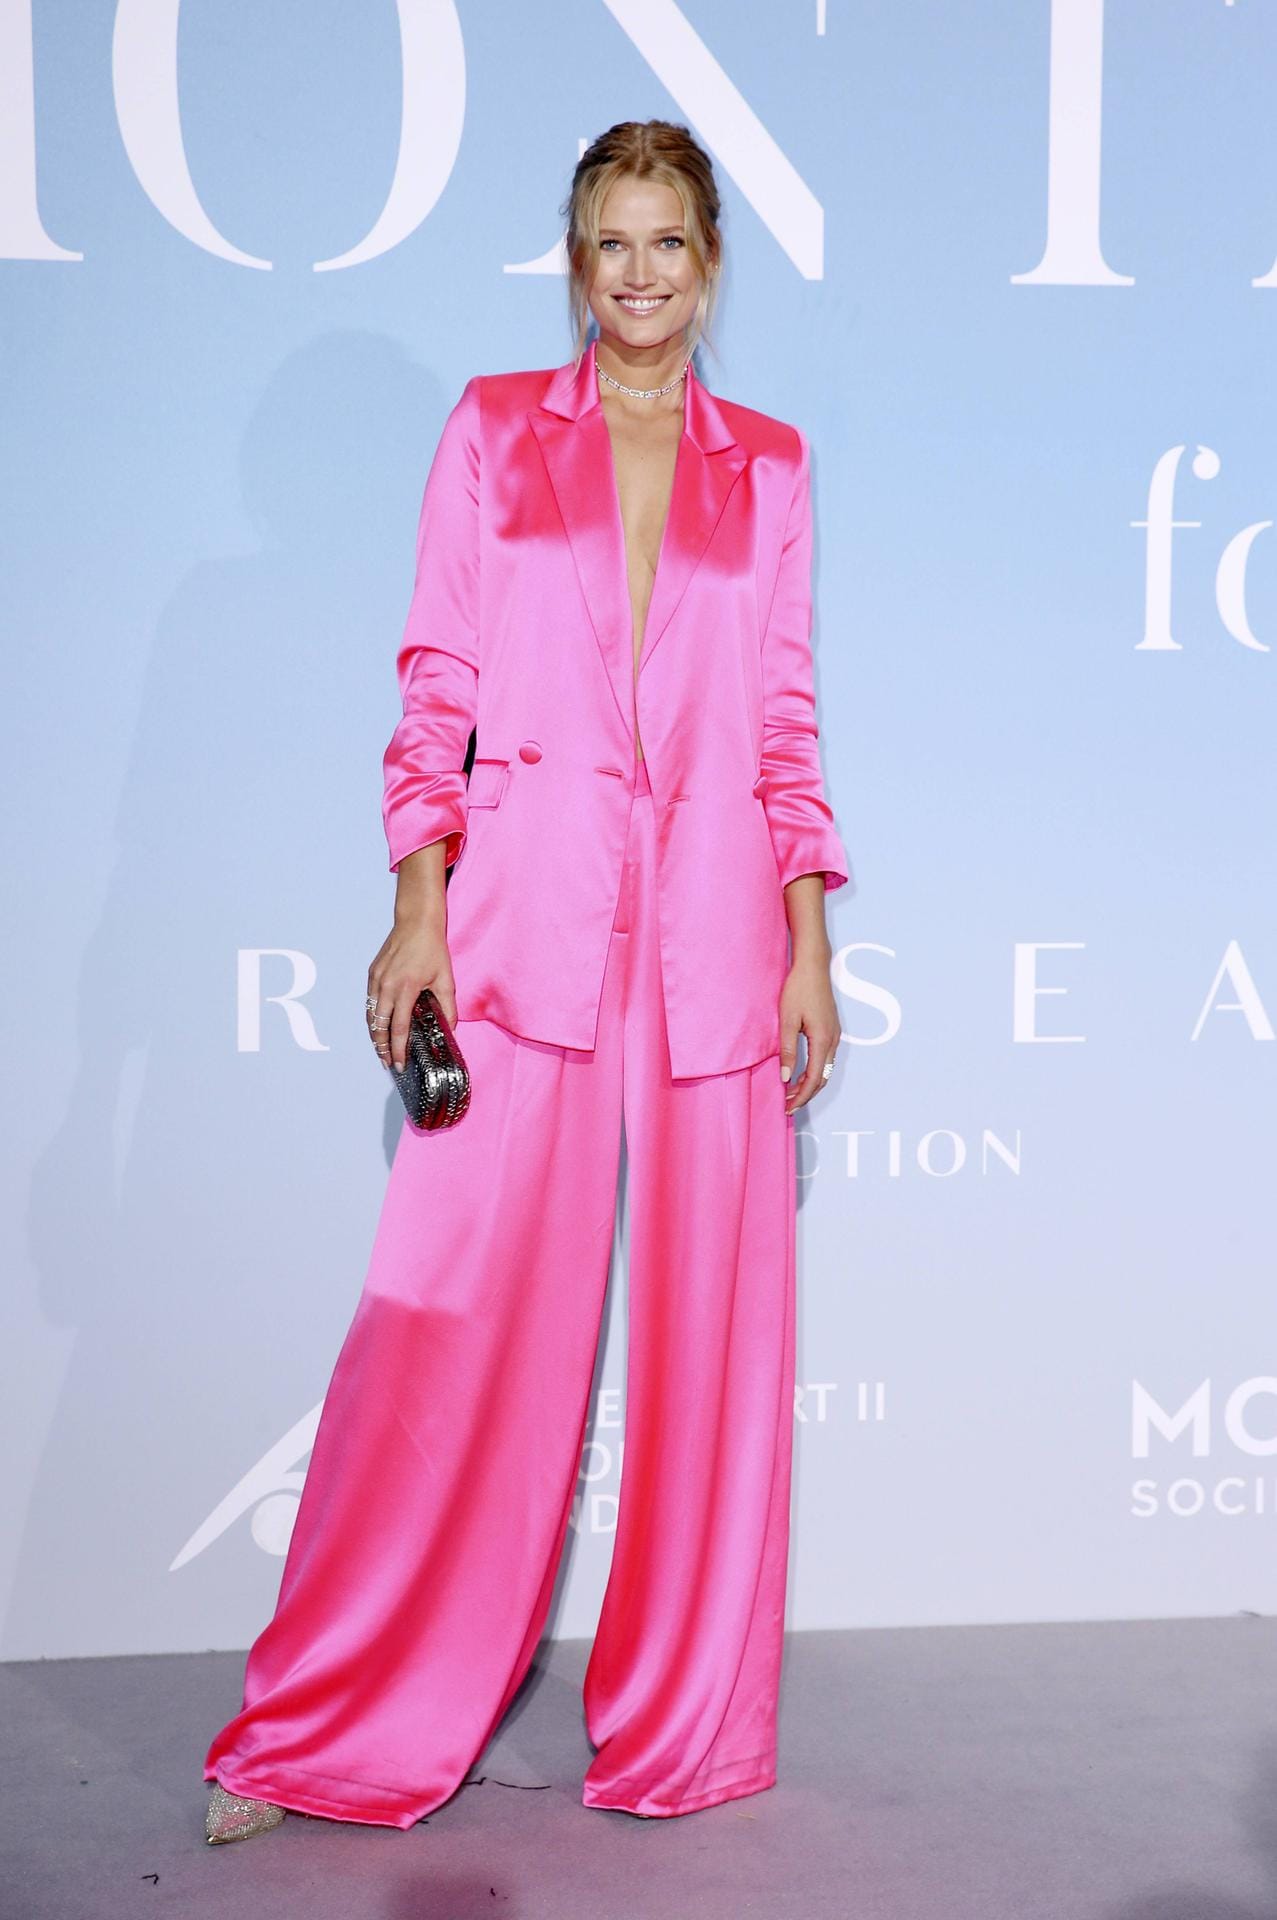 Farbenfroh: Toni Garrn begeisterte in einem pinkfarbenen Oversize-Anzug.